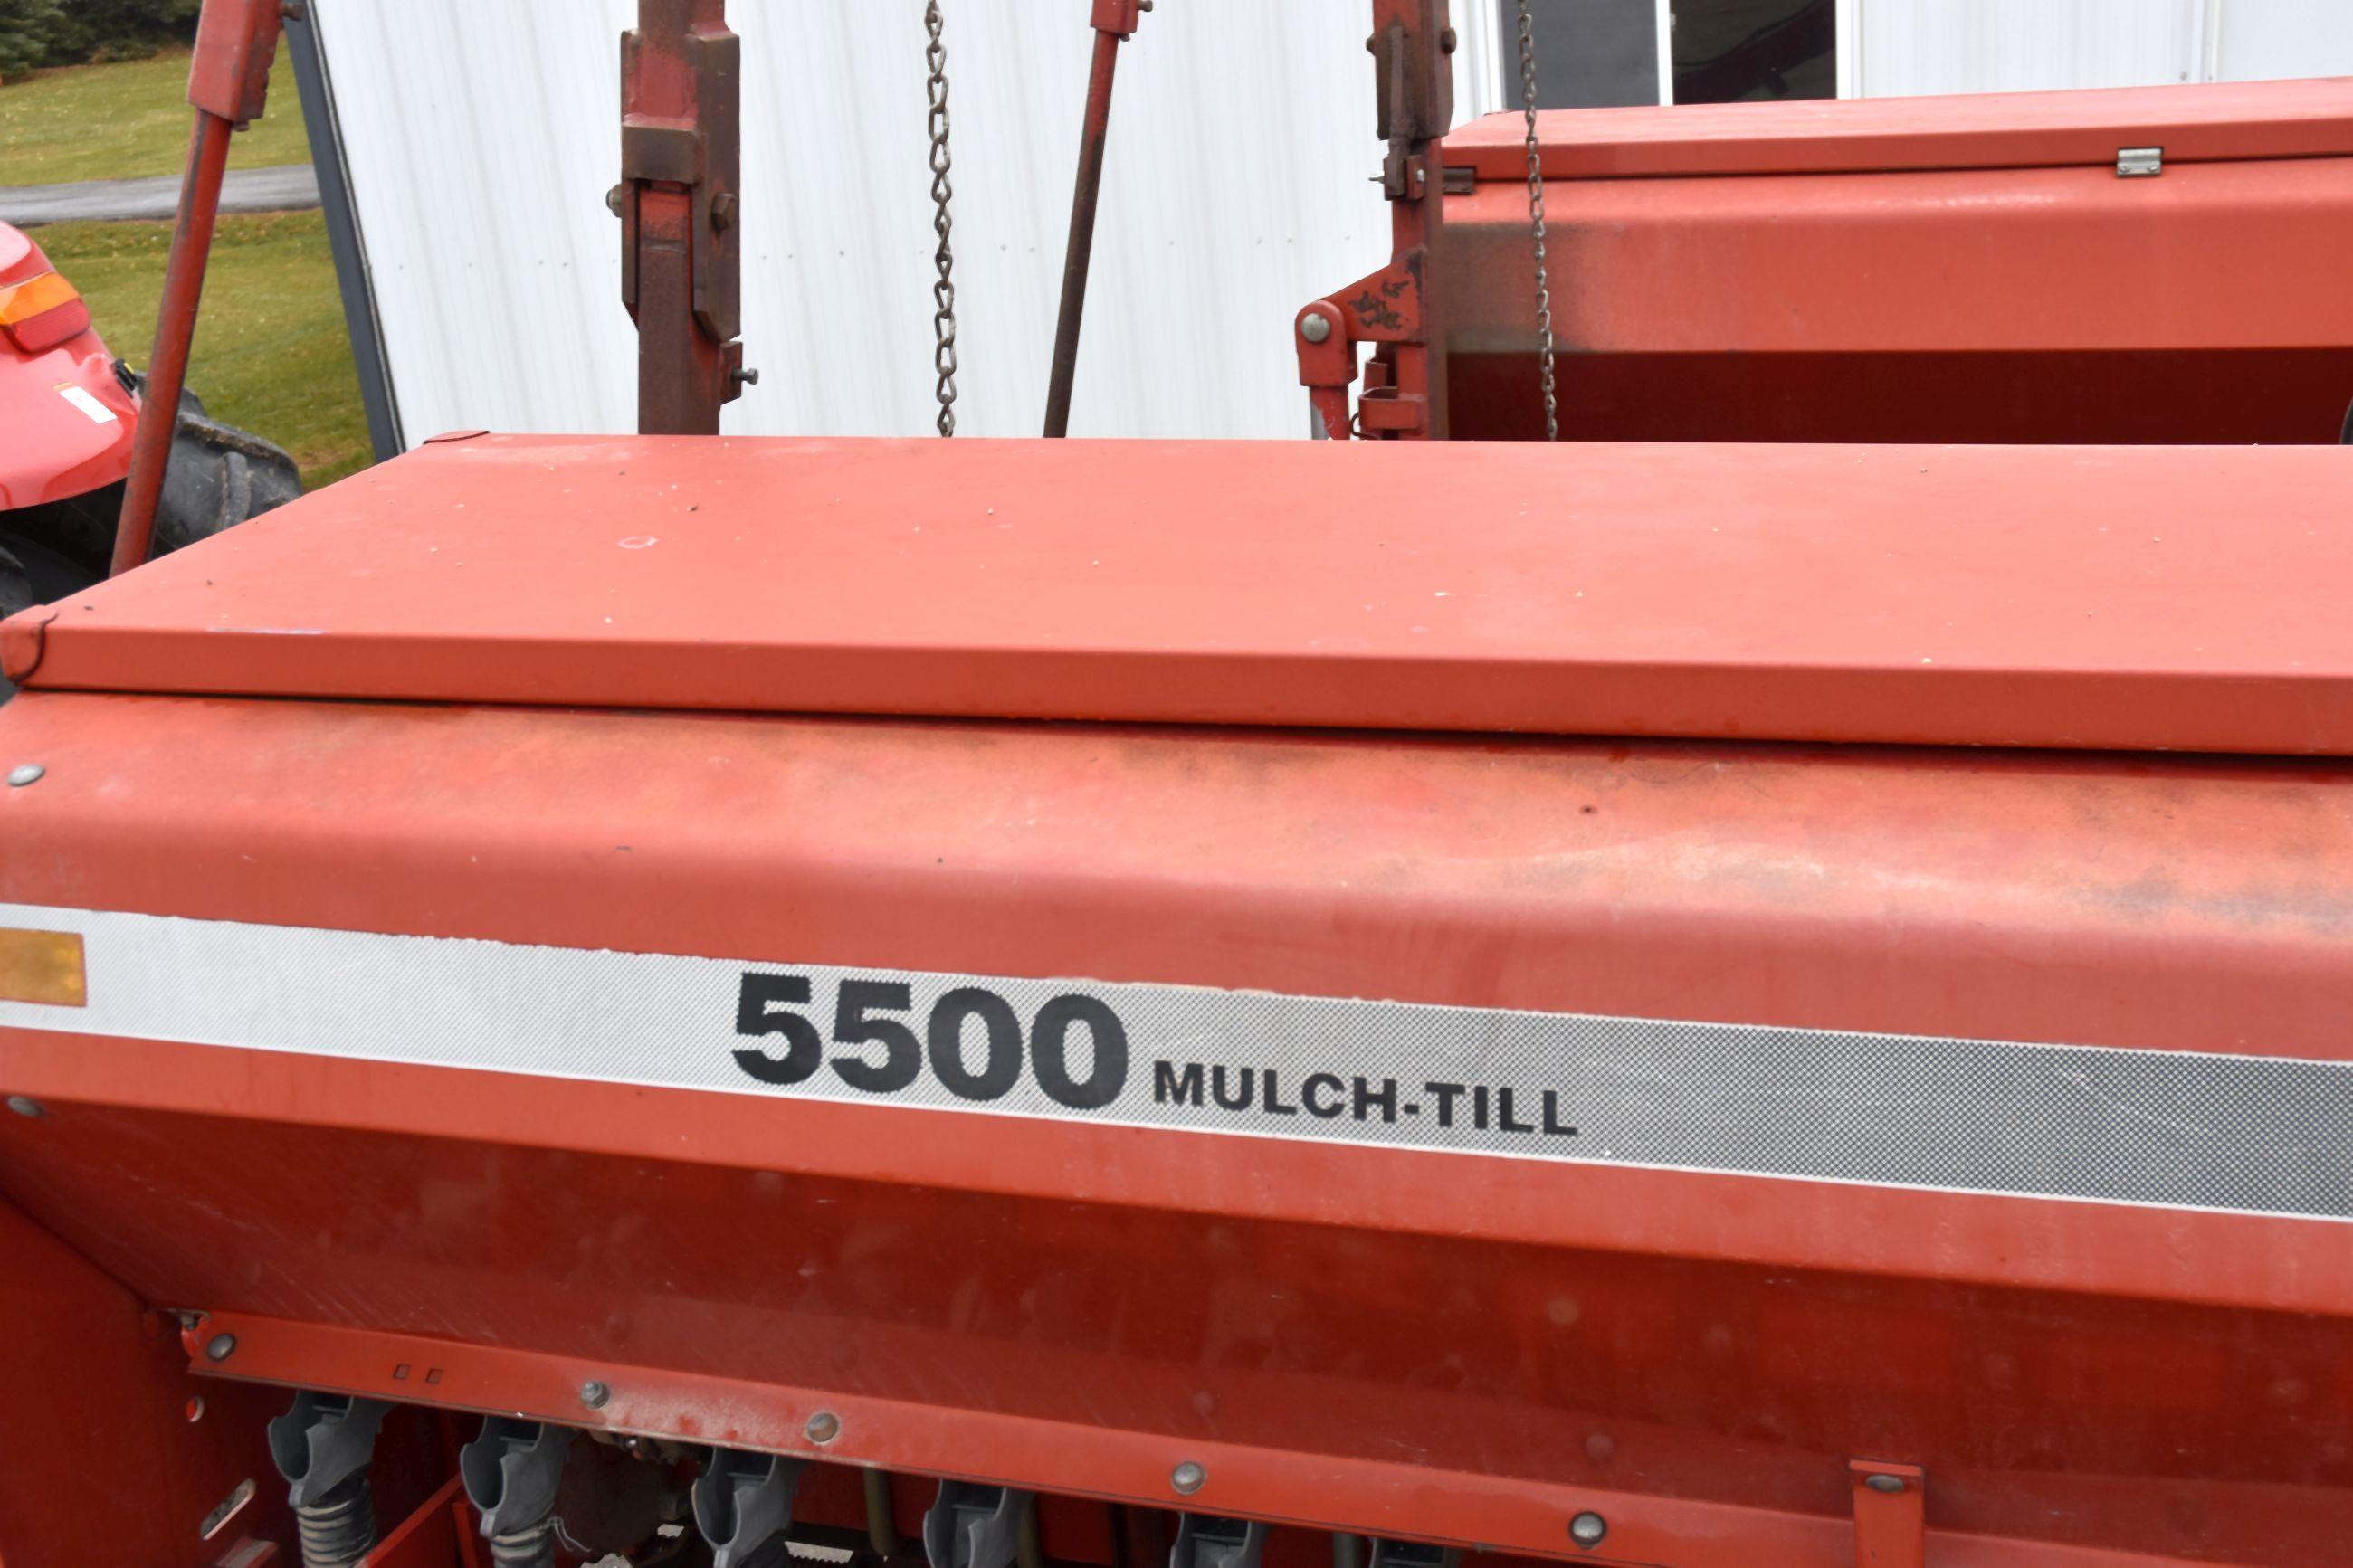 Case IH 5500 Mulch Till Drill, 30’ Front Fold, 6.5” Spacings, Press Wheel, 4 Wheel Transport, Marker